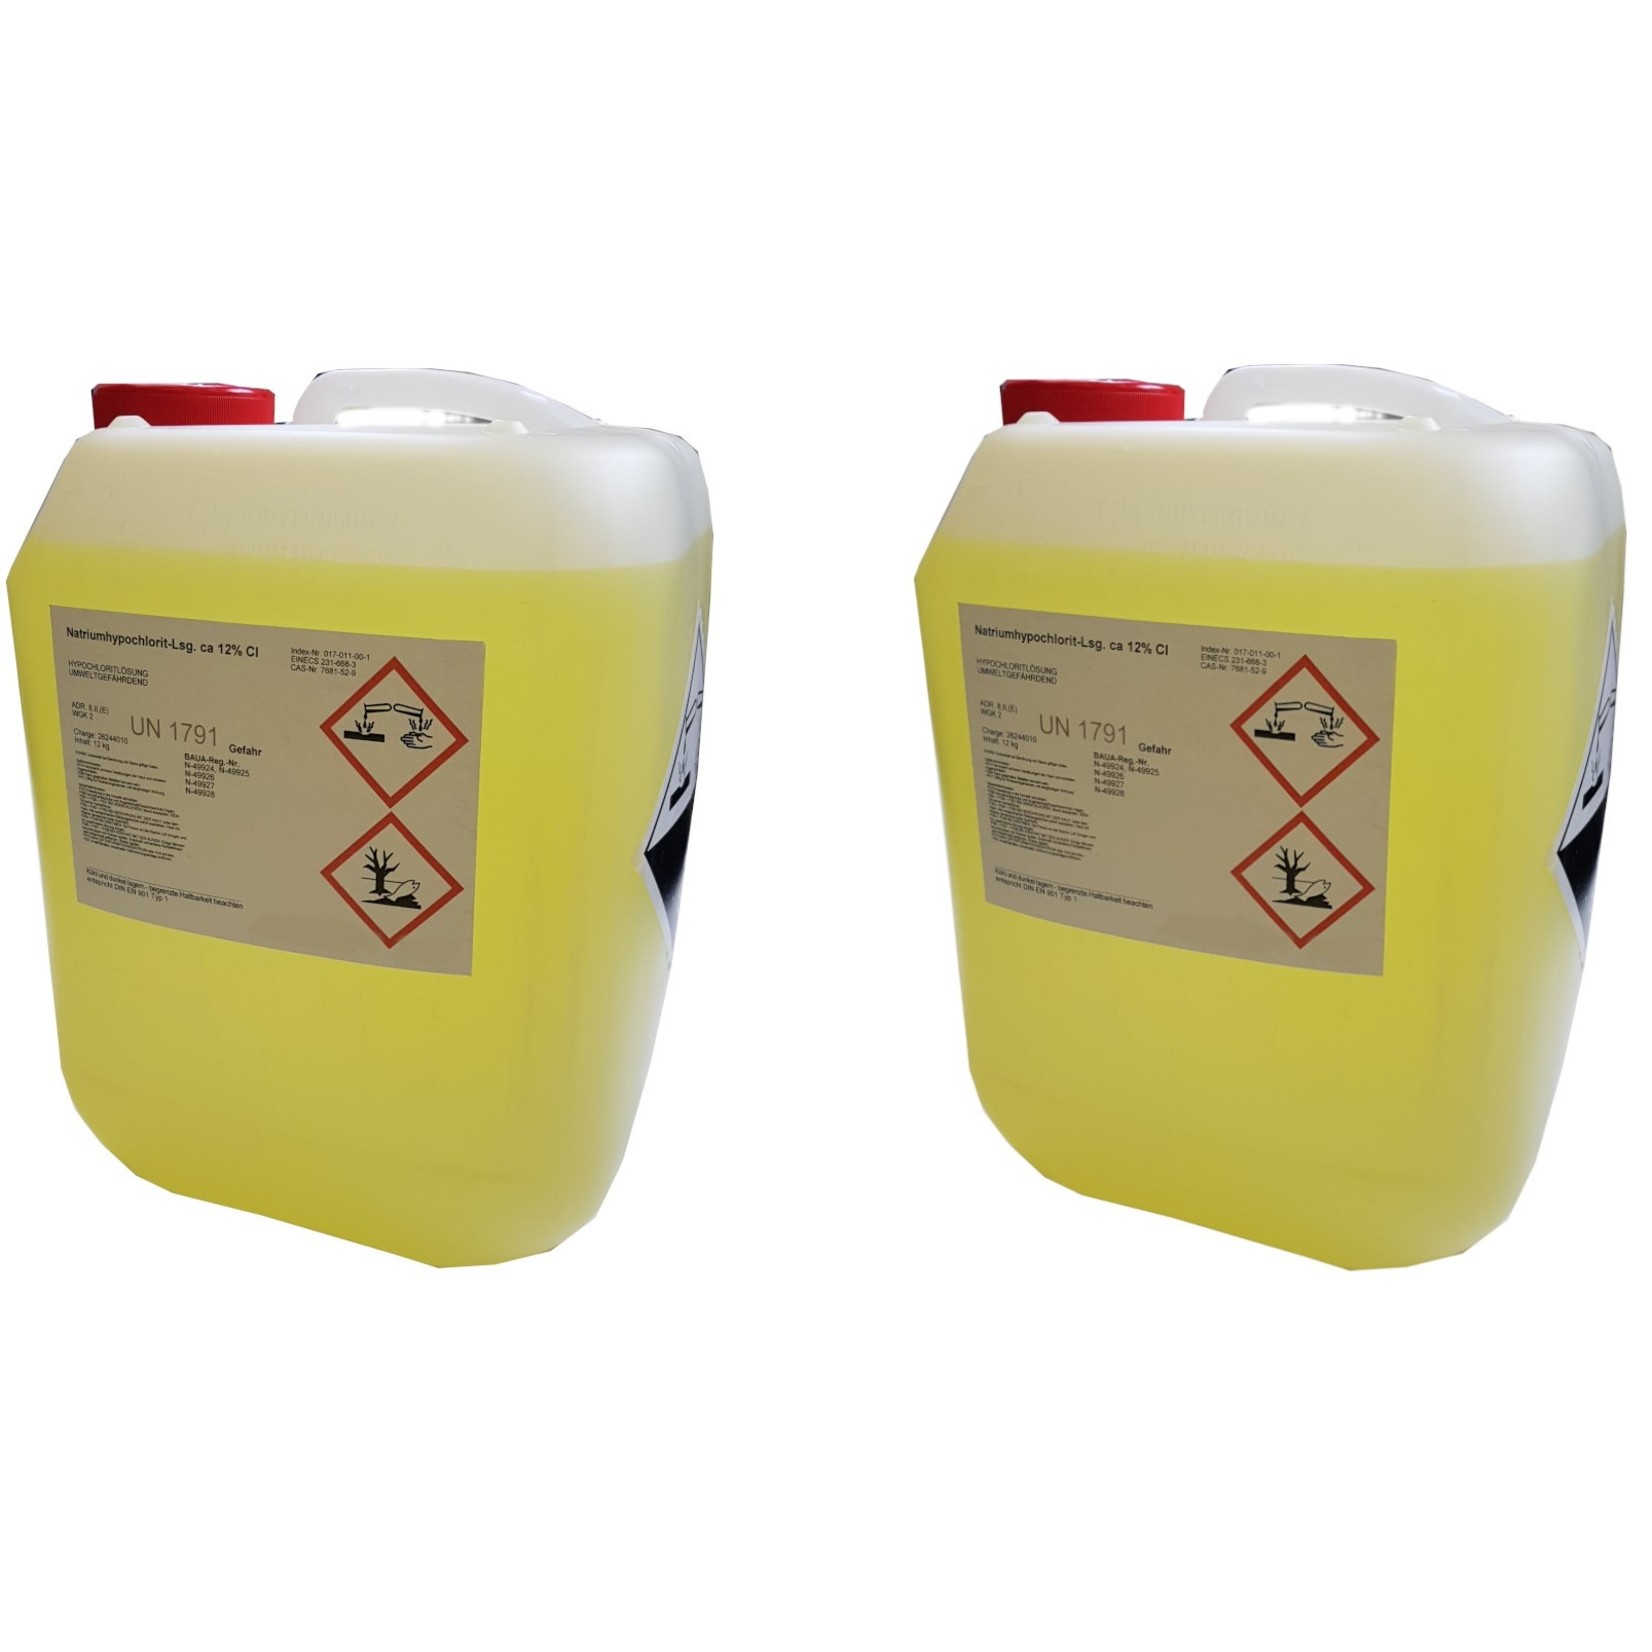 Bemango Chlorbleiche Natriumhypochloritlösung 12% im 10 Liter Kanister